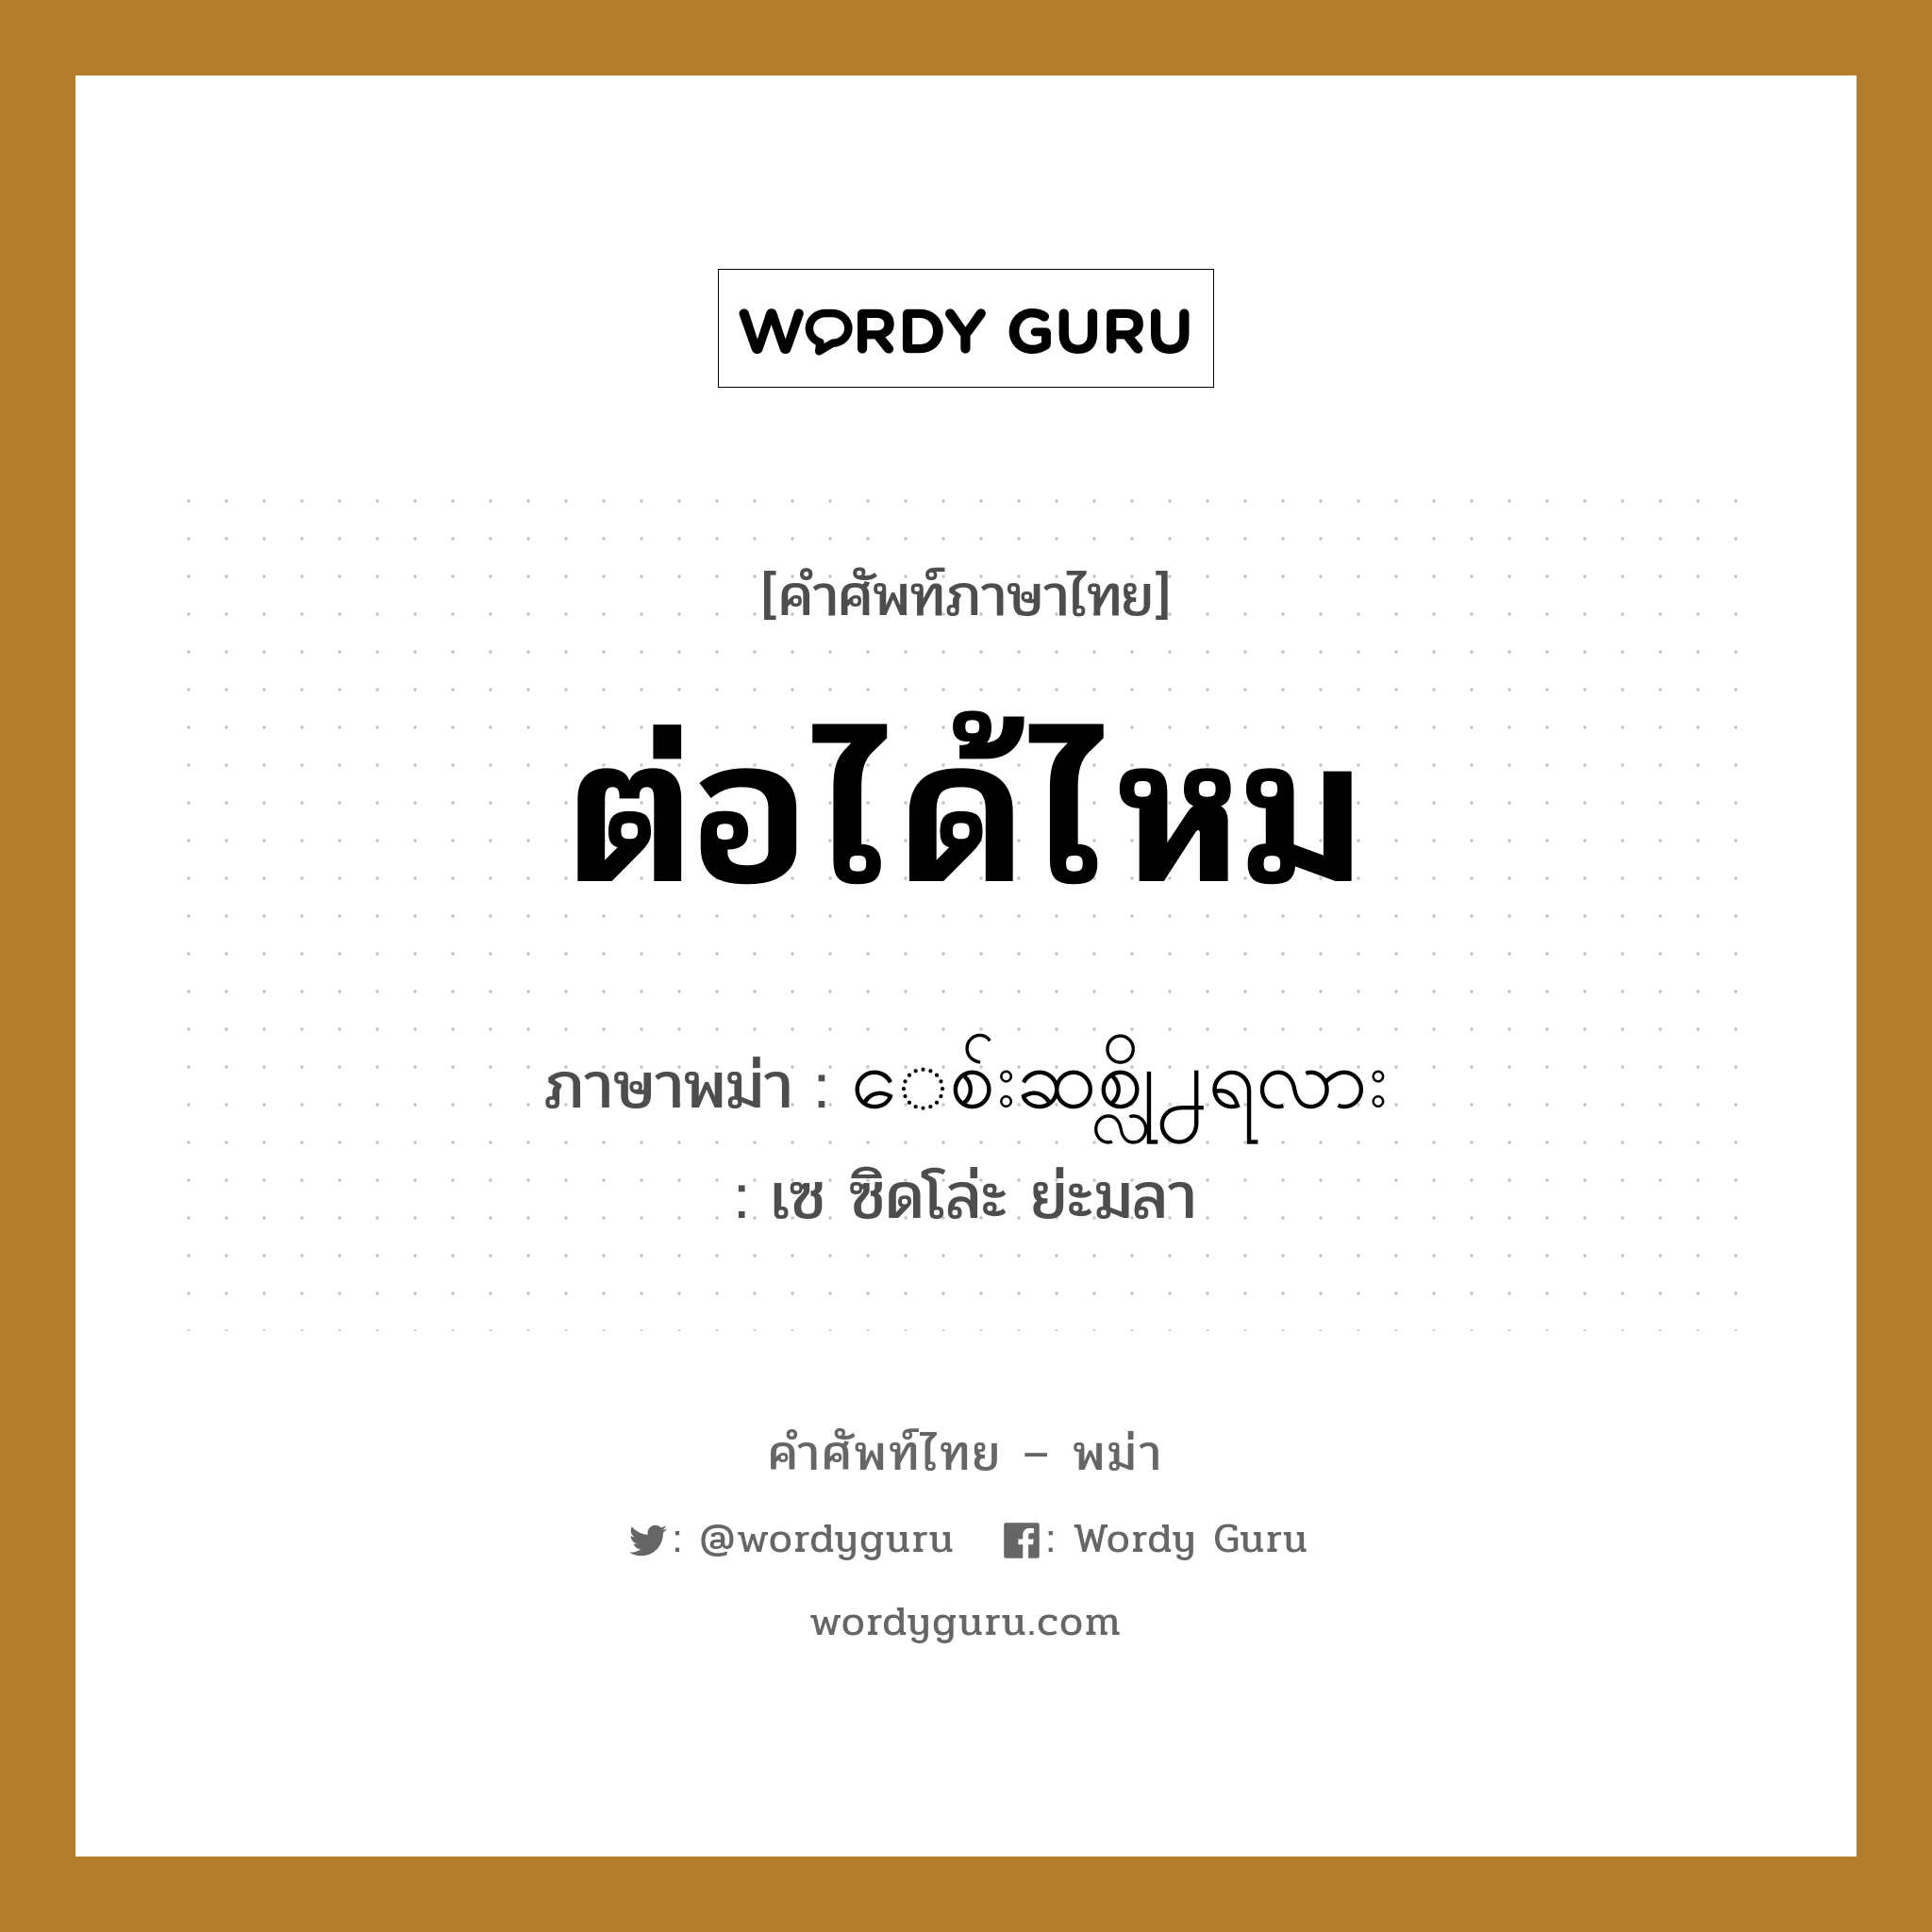 ต่อได้ไหม ภาษาพม่าคืออะไร, คำศัพท์ภาษาไทย - พม่า ต่อได้ไหม ภาษาพม่า ေစ်းဆစ္လို႕ရလား หมวด บทสนทนาการซื้อขาย เซ ซิดโล่ะ ย่ะมลา หมวด บทสนทนาการซื้อขาย